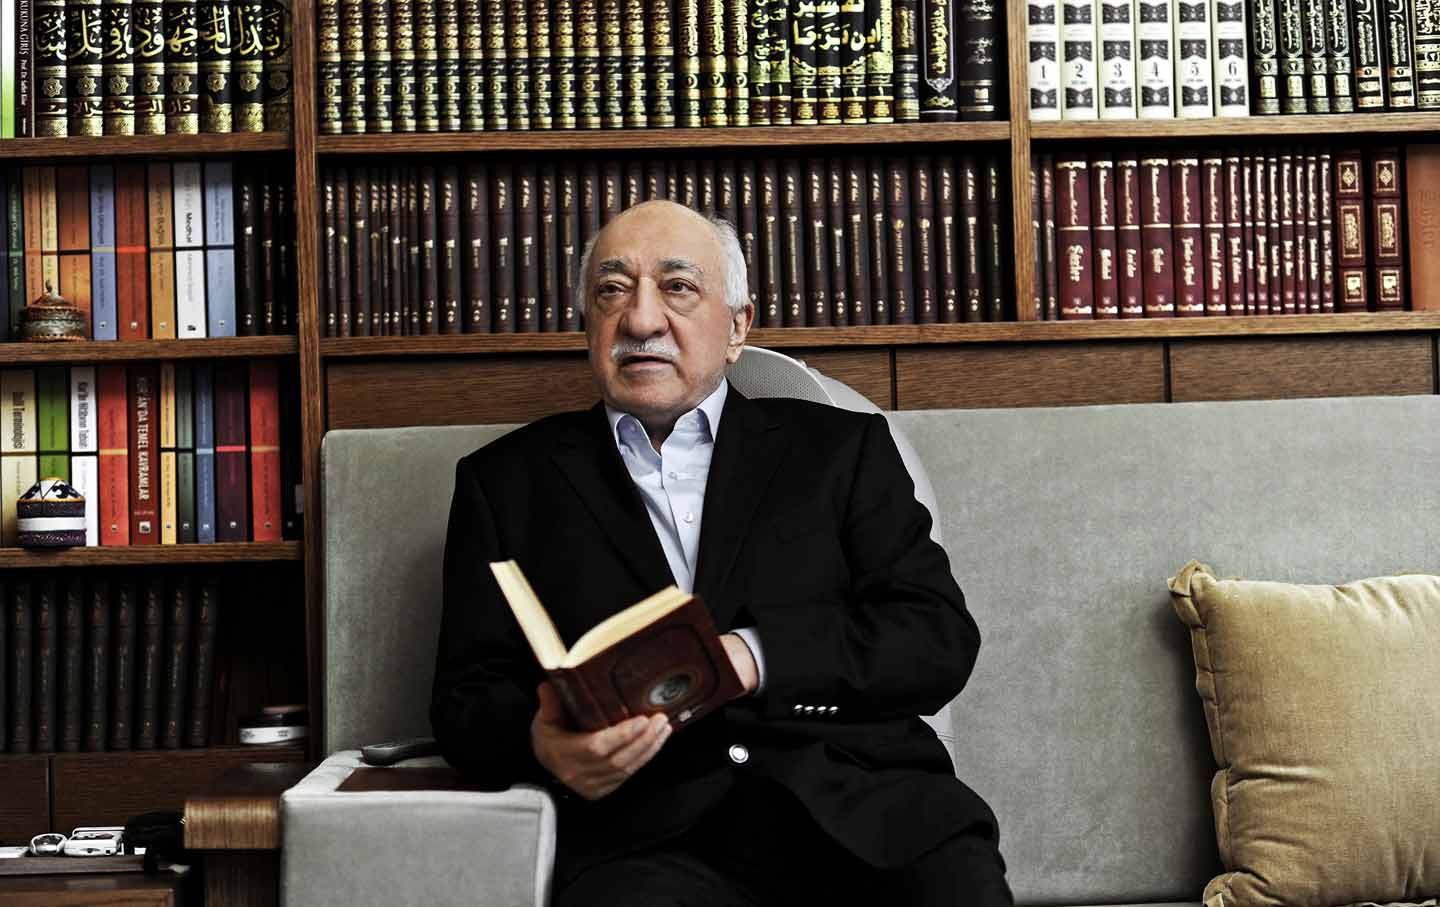 Fethullah Gulen reading